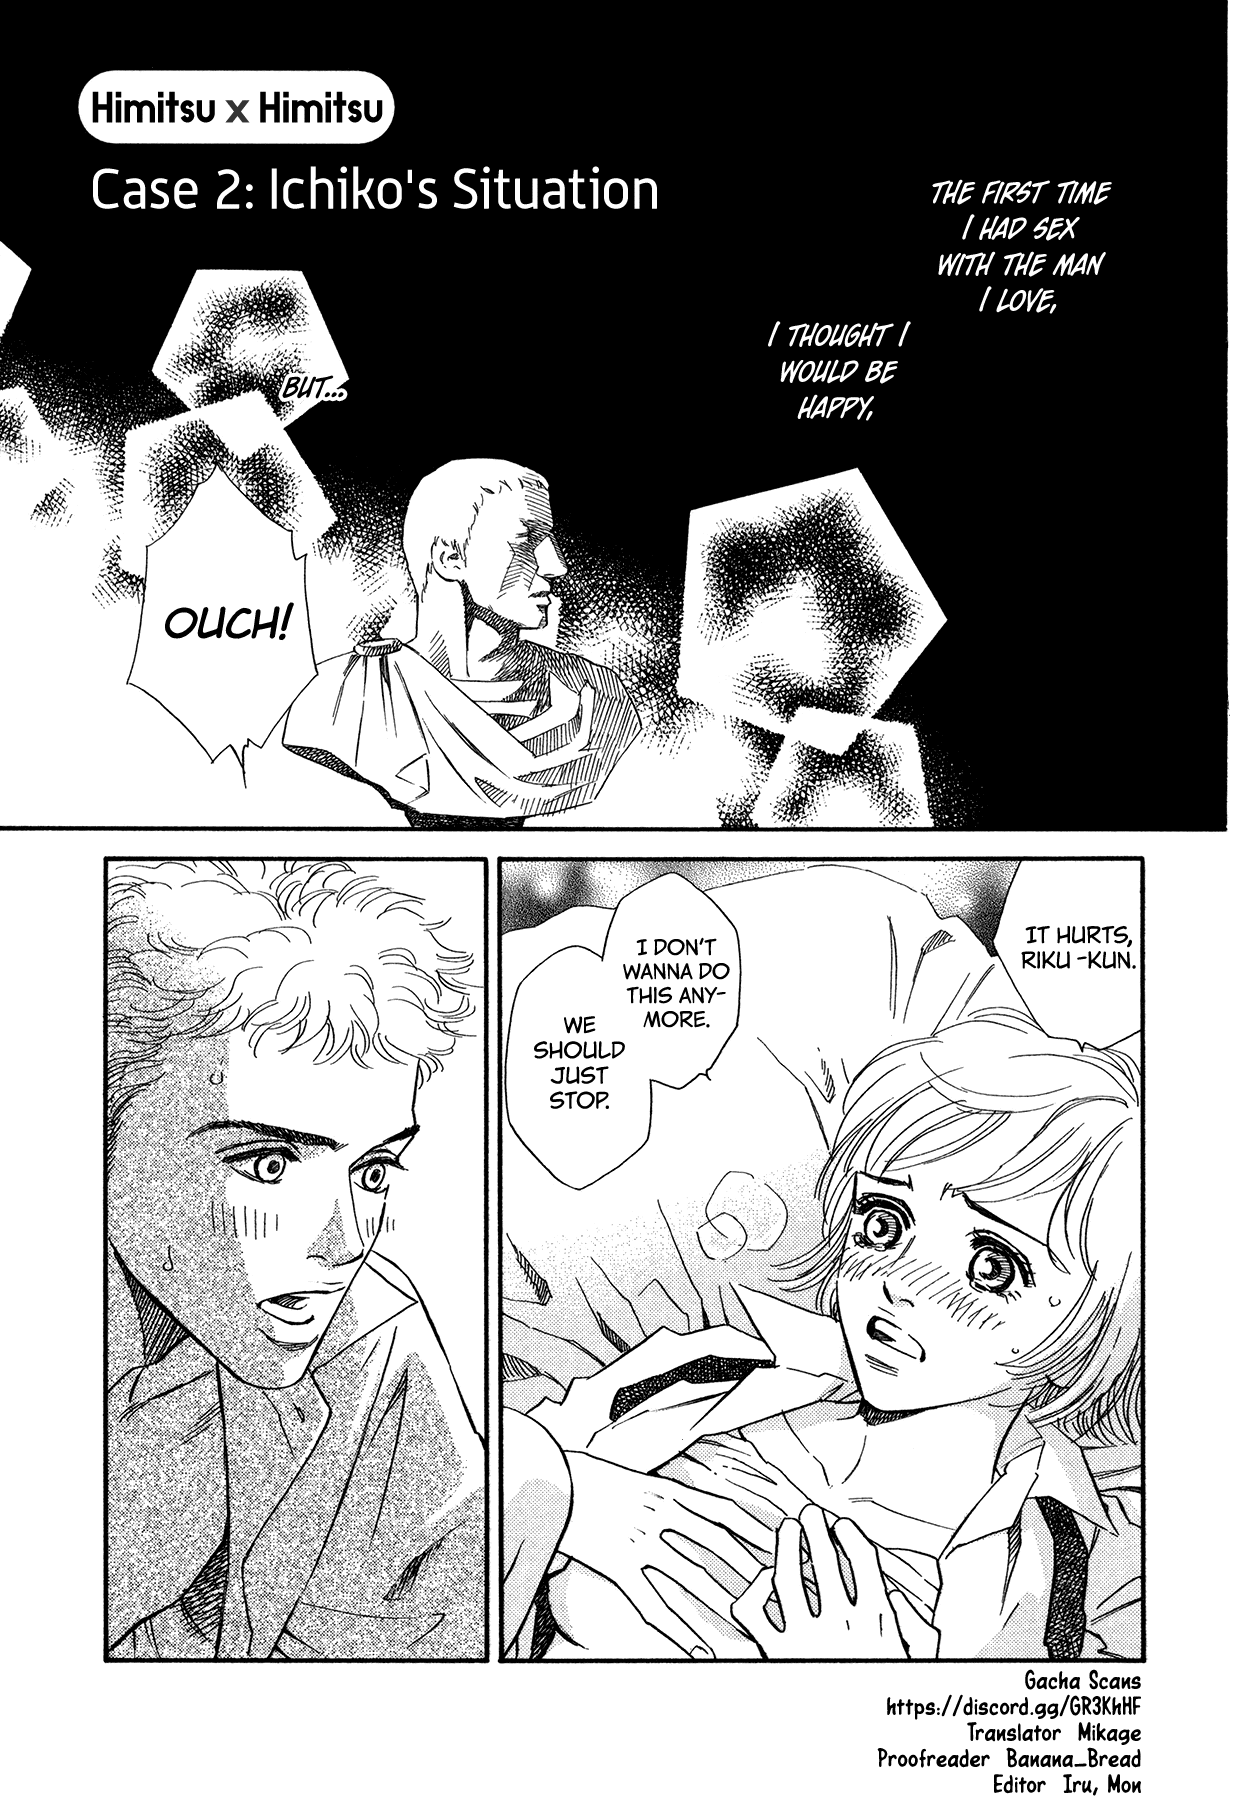 Himitsu X Himitsu - Page 1